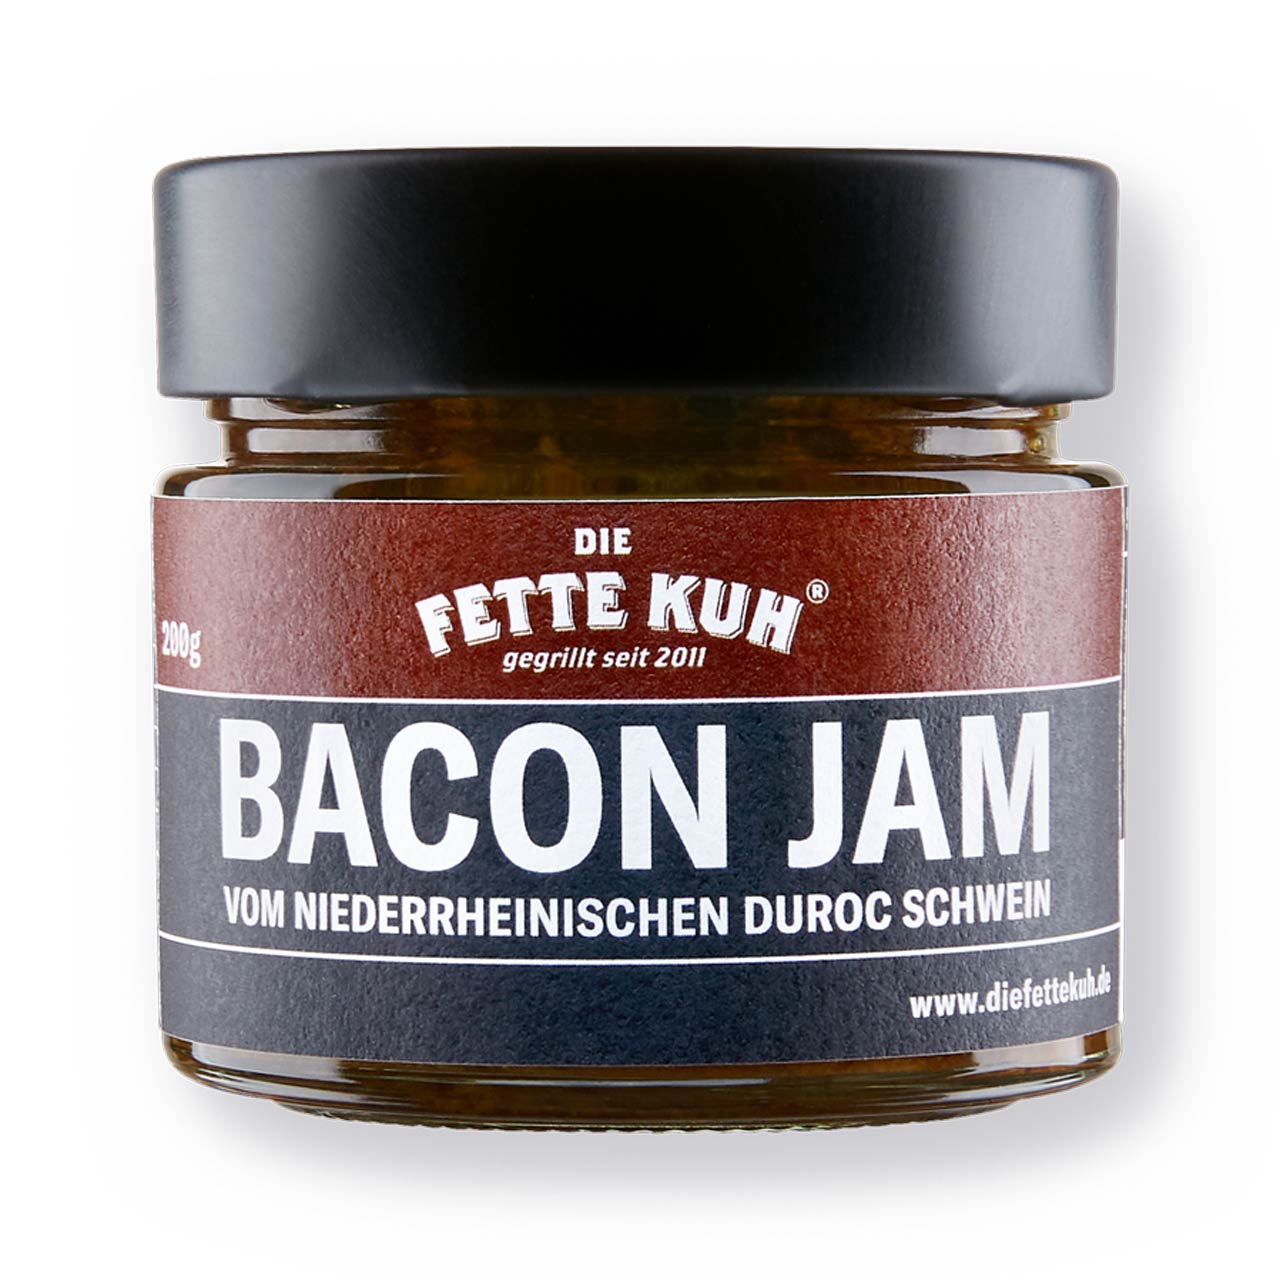 Die Fette Kuh - Bacon Jam 200g